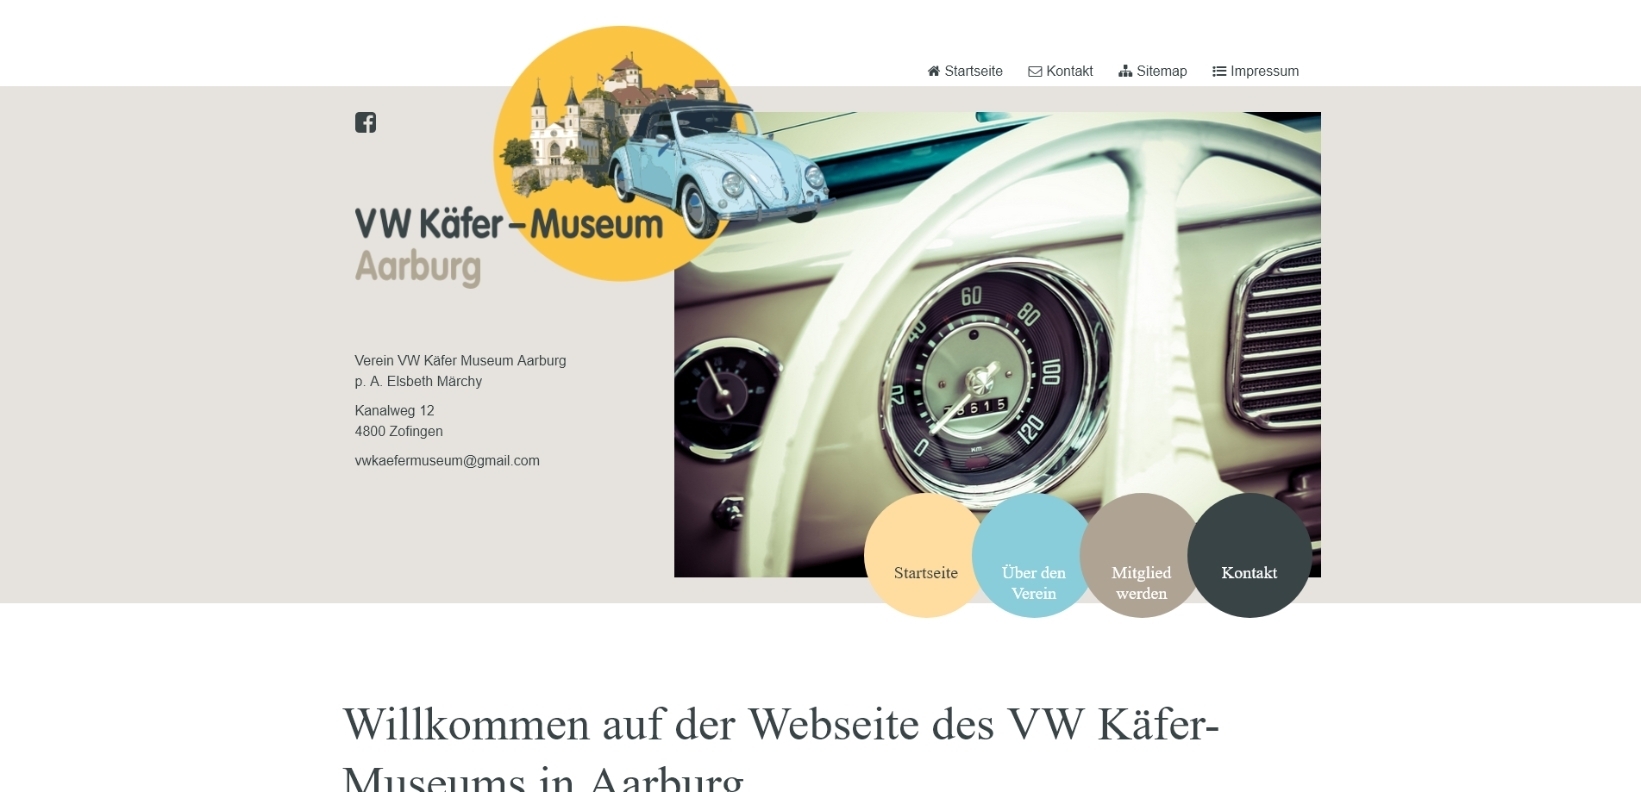 Verein VW Käfer Museum Aarburg